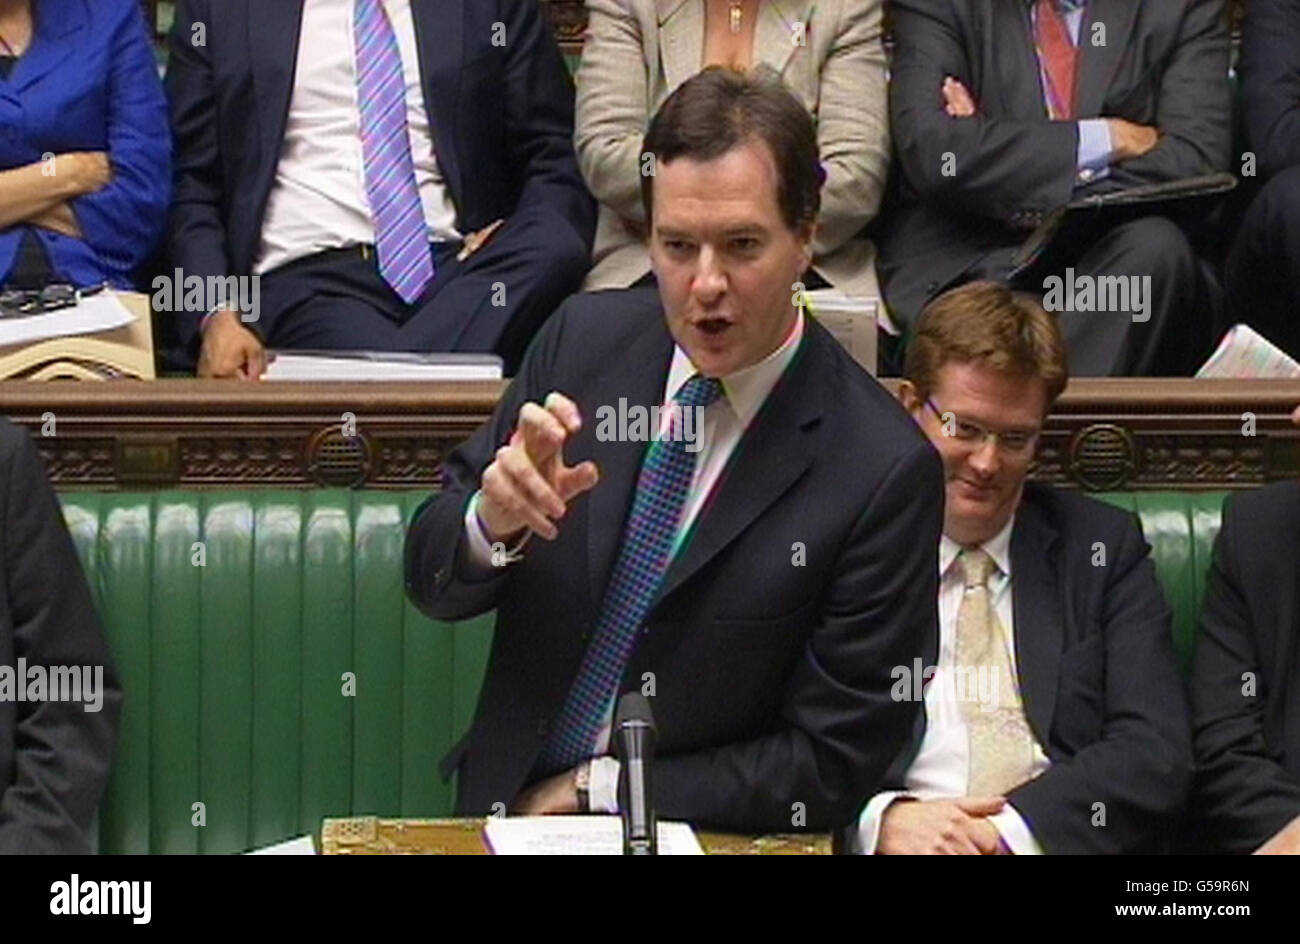 Bundeskanzler George Osborne spricht vor dem Londoner Unterhaus. Kanzler George Osborne und sein Amtskollegen Ed Balls waren in wütende Gespräche verwickelt, als Abgeordnete über Vorschläge für eine Untersuchung des Bankenskandals debattierten. Stockfoto